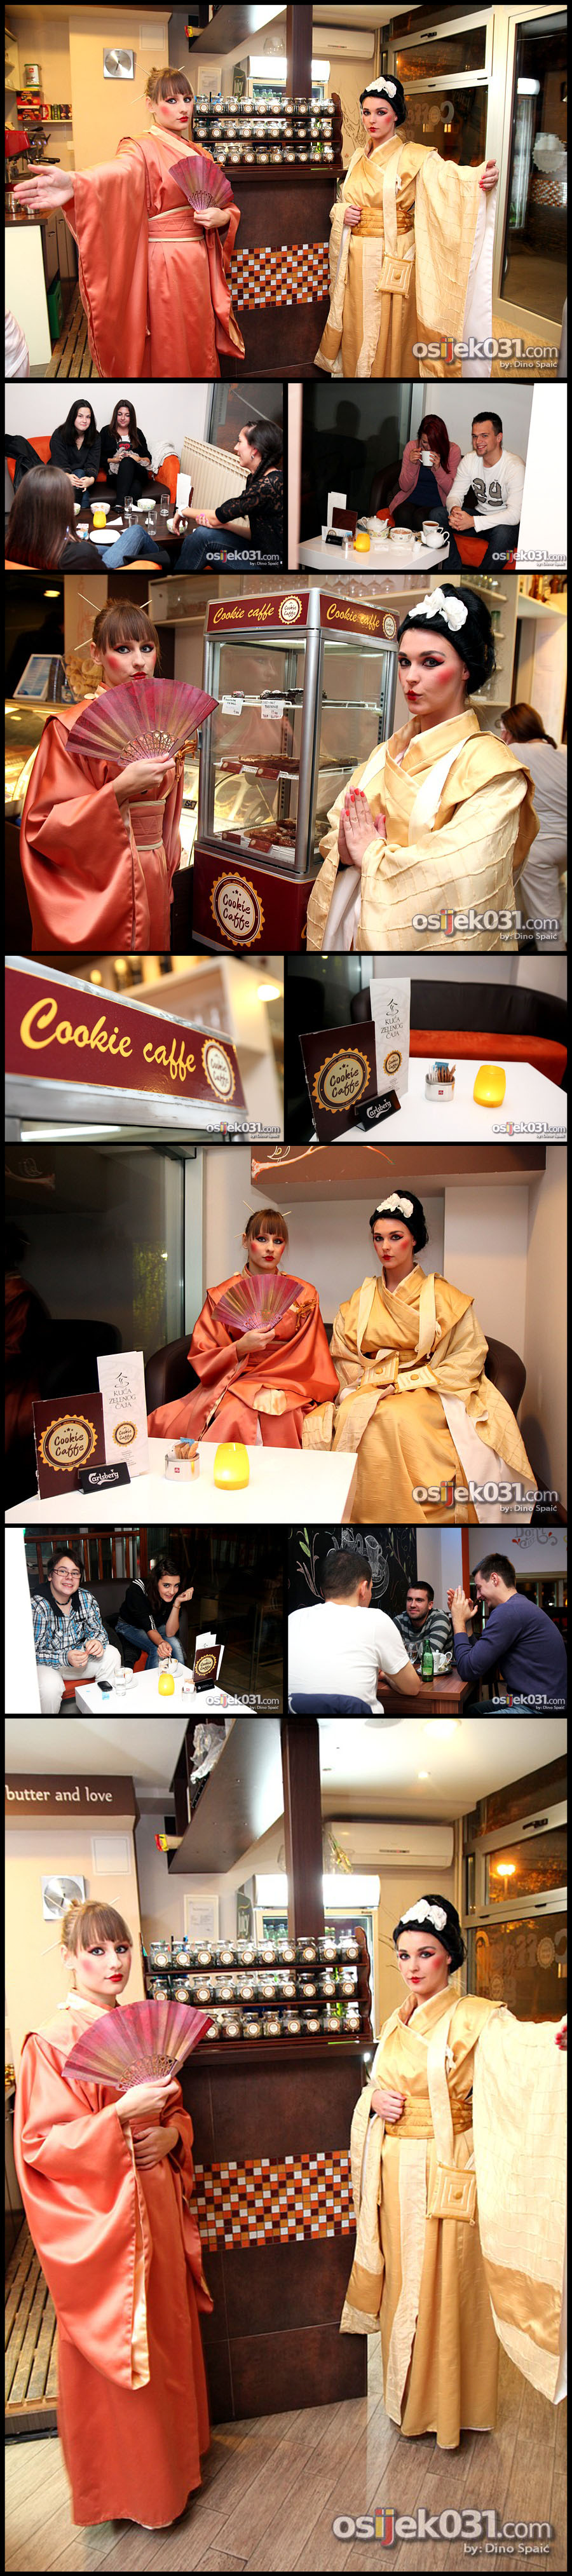 Cookie caffe: promocija ajeva uz geje

[url=http://www.osijek031.com/osijek.php?najava_id=41448]
Cookie Caffe: promocija ajeva uz geje[/url]

Kljune rijei: cookie caffe kola aj